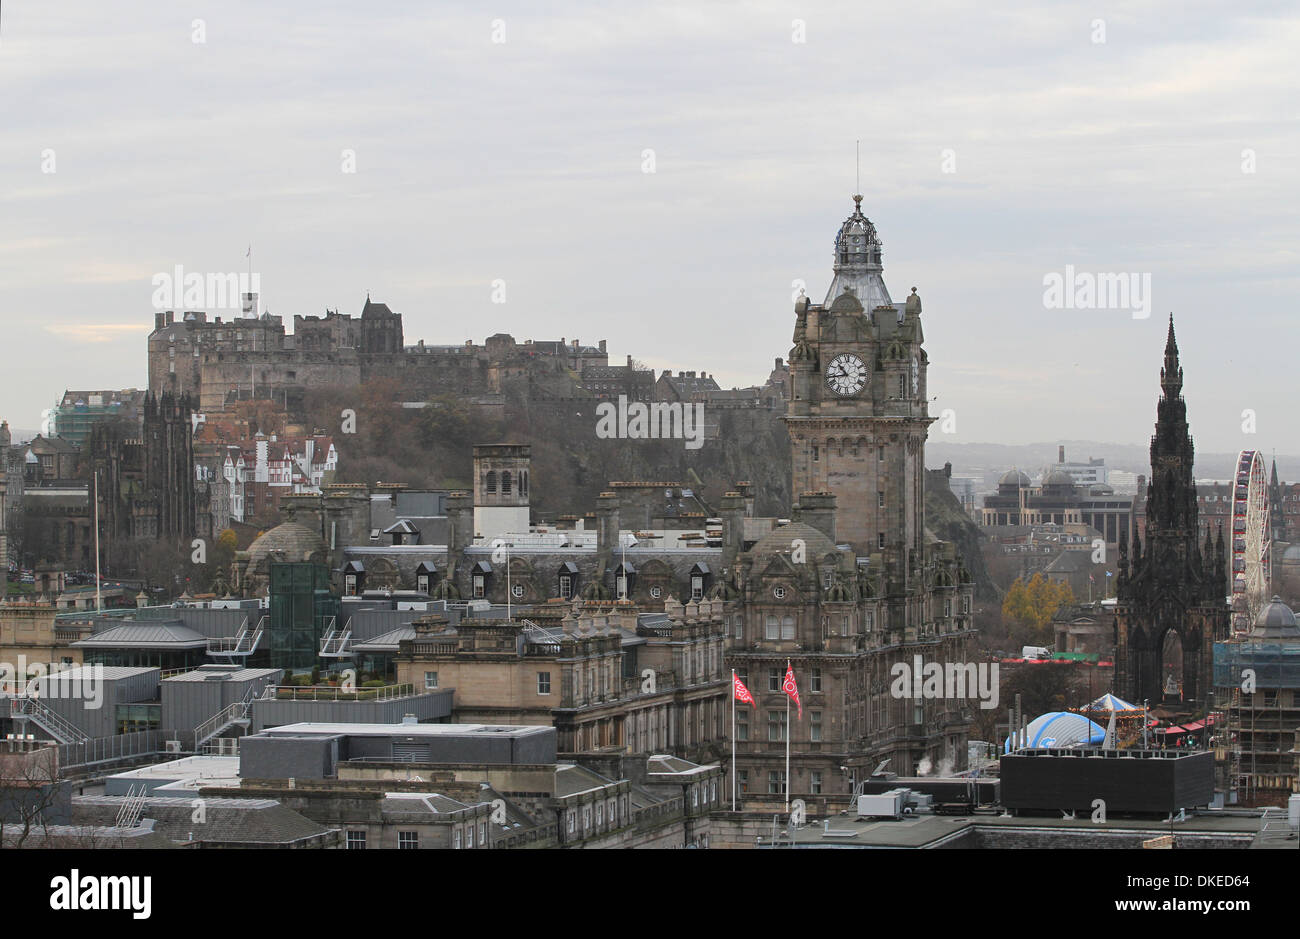 El castillo de Edimburgo y el Balmoral Hotel Edimburgo Escocia, noviembre de 2013 Foto de stock